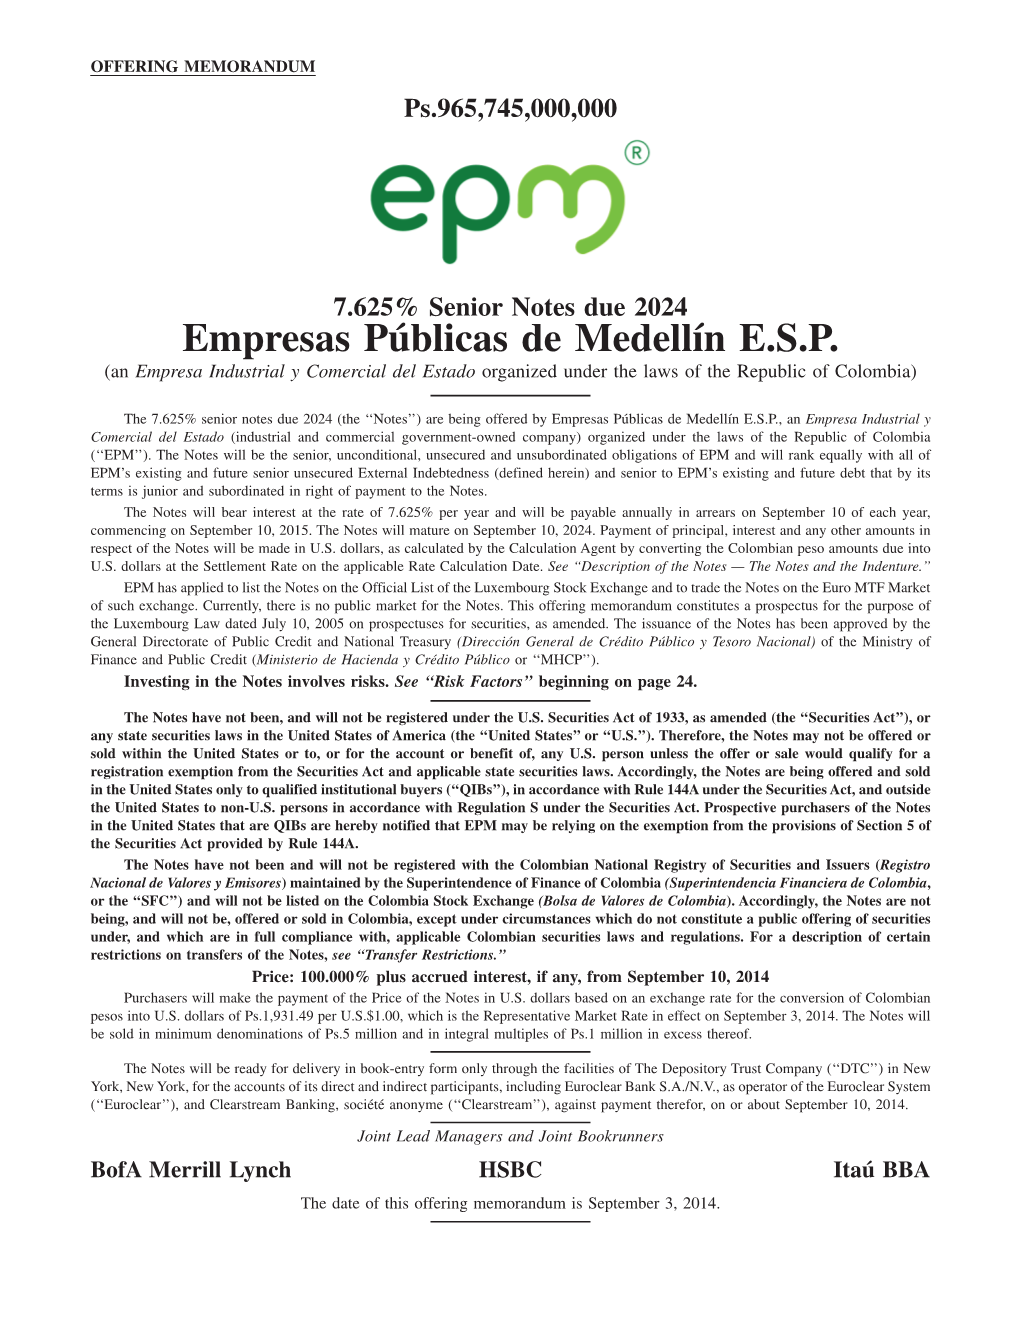 Empresas Públicas De Medellín E.S.P. (An Empresa Industrial Y Comercial Del Estado Organized Under the Laws of the Republic of Colombia)